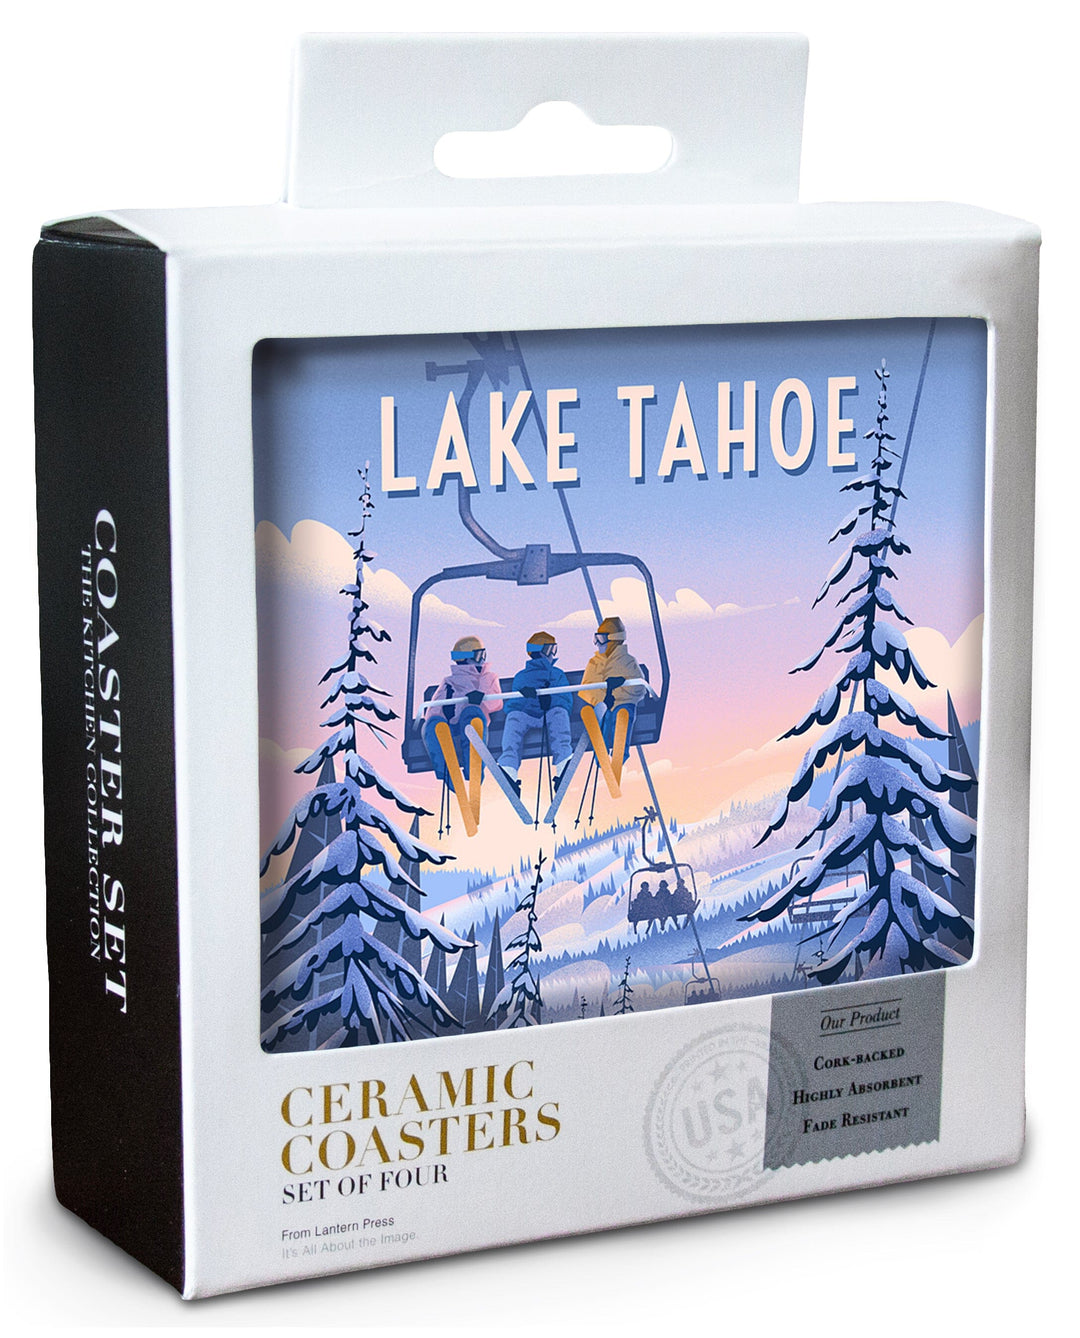 Lake Tahoe, Chill on the Uphill, Ski Lift Coasters Lantern Press 